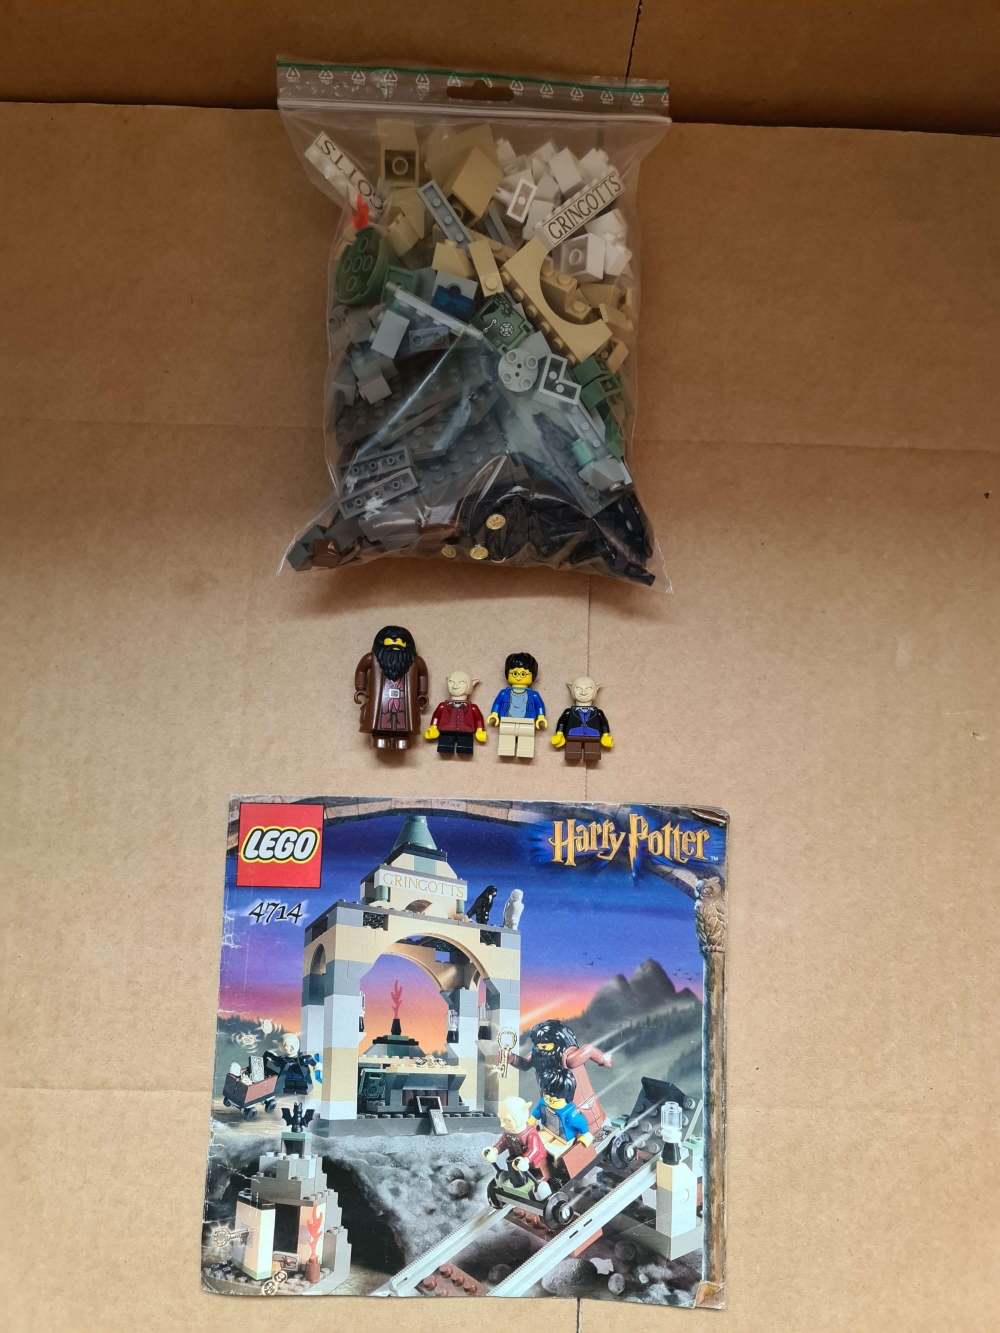 Sett 4714 fra Lego Harry Potter : Sorcerer's Stone serien.
Flott sett.
Komplett med manual.